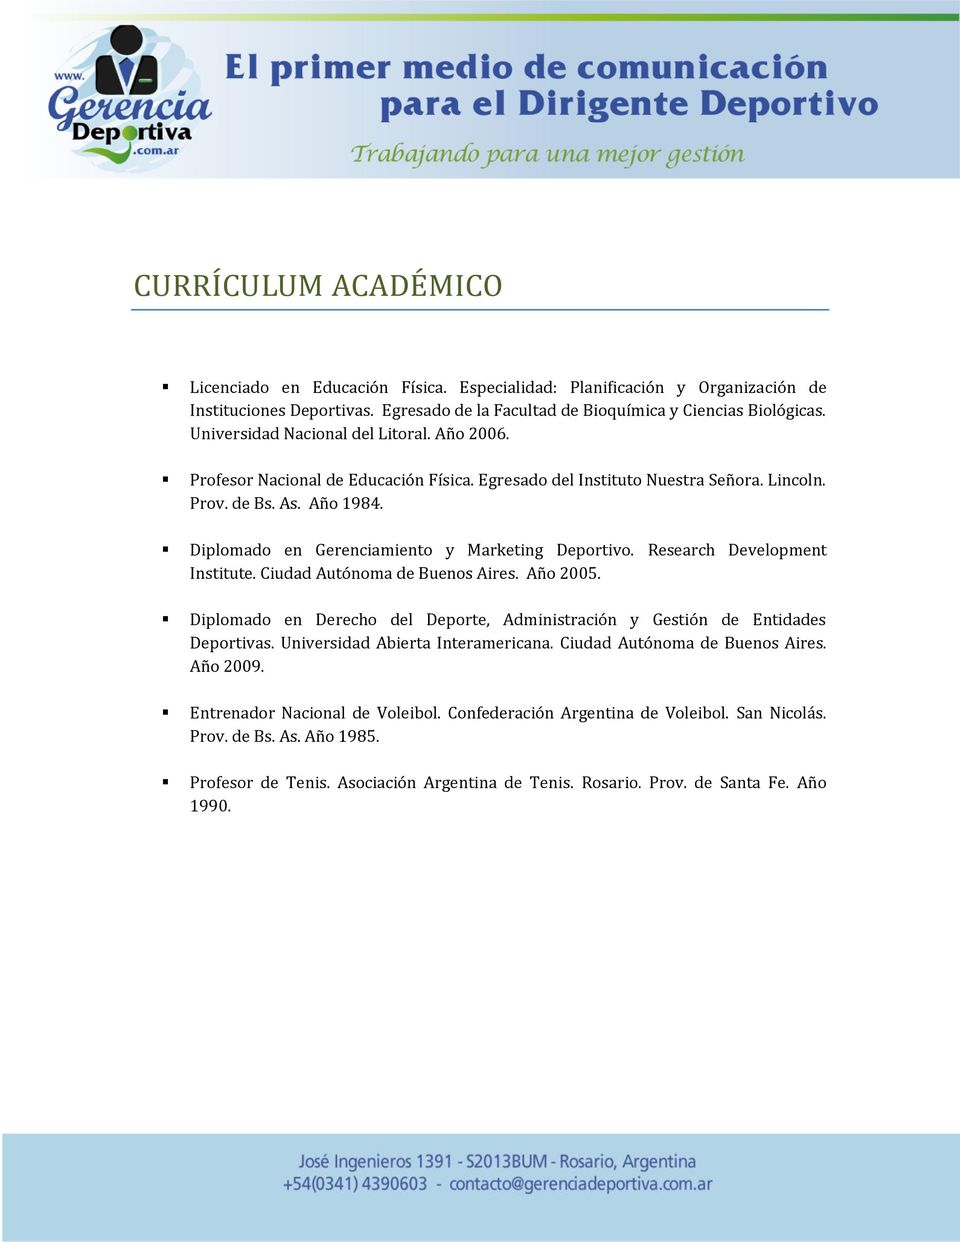 Diplomado en Gerenciamiento y Marketing Deportivo. Research Development Institute. Ciudad Autónoma de Buenos Aires. Año 2005.